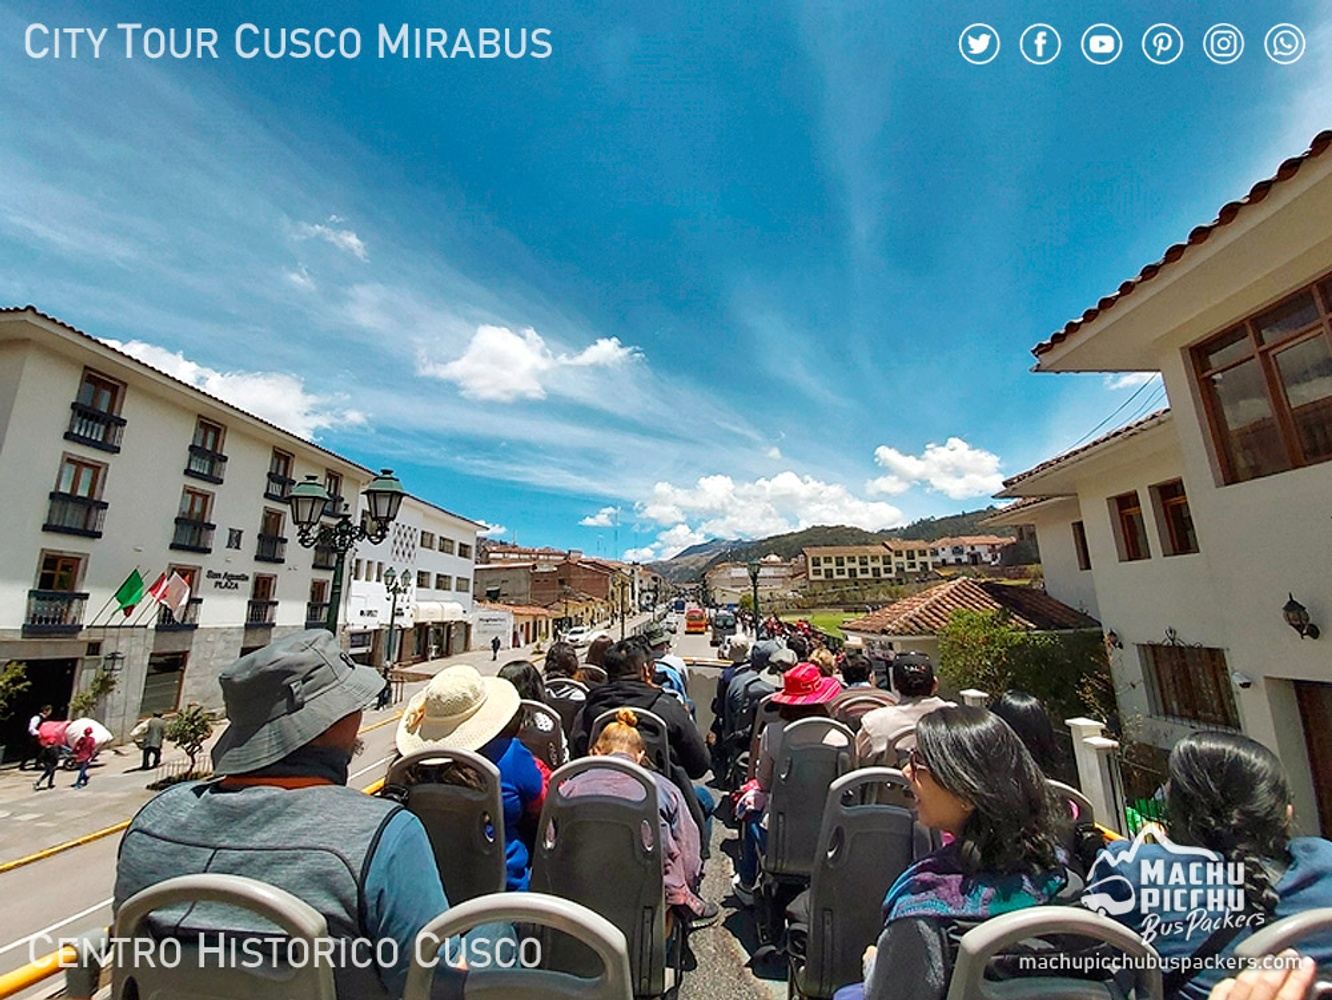 Sightseeing Cusco Panoramic Mirabus